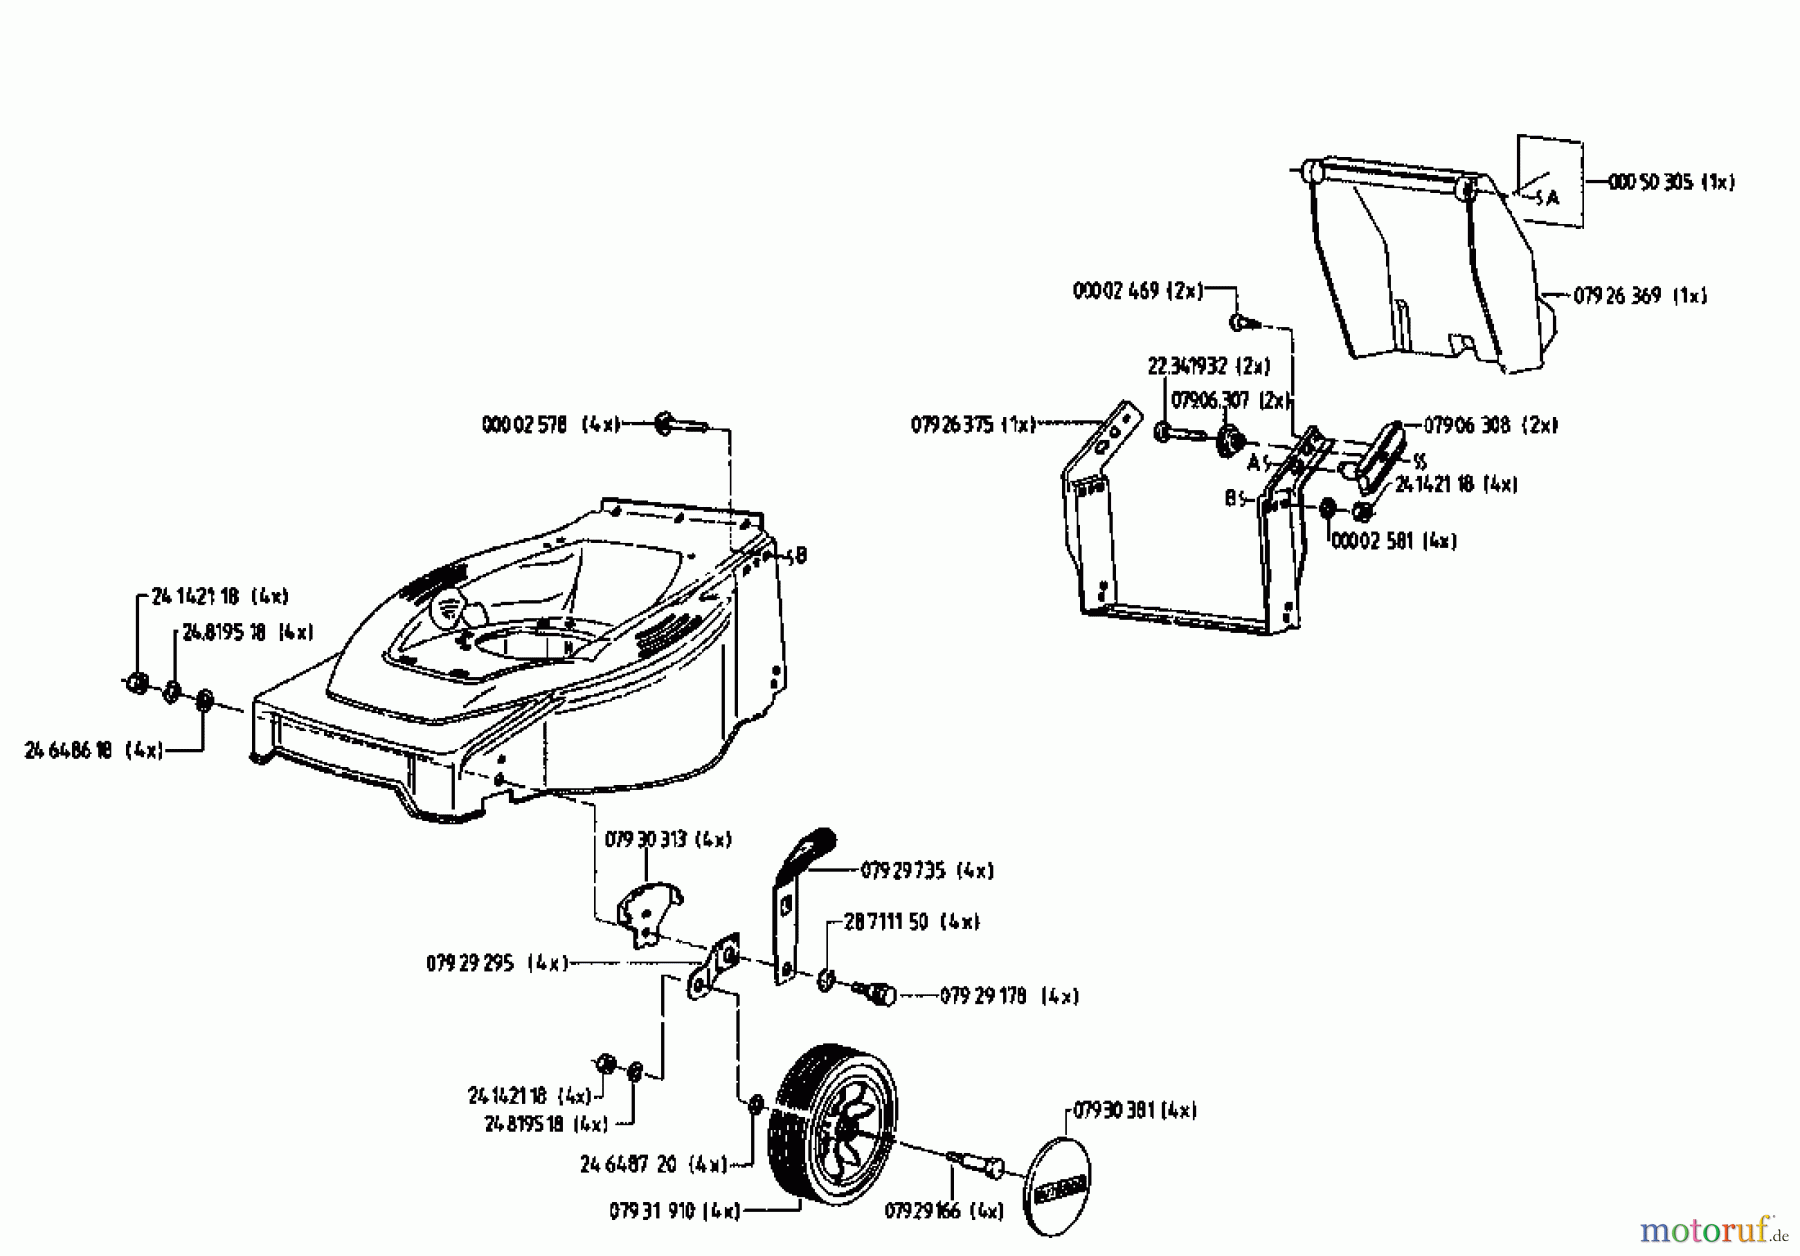  Gutbrod Tondeuse électrique HE 48 02817.04  (1995) Machine de base